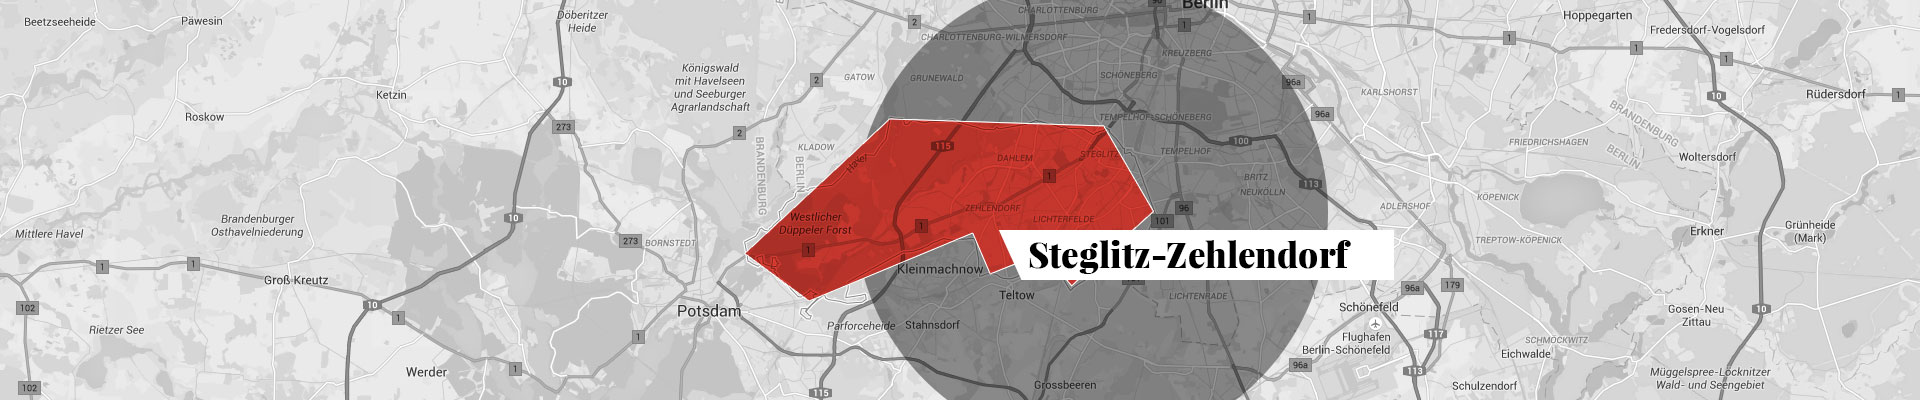 Steglitz-Zehlendorf plan